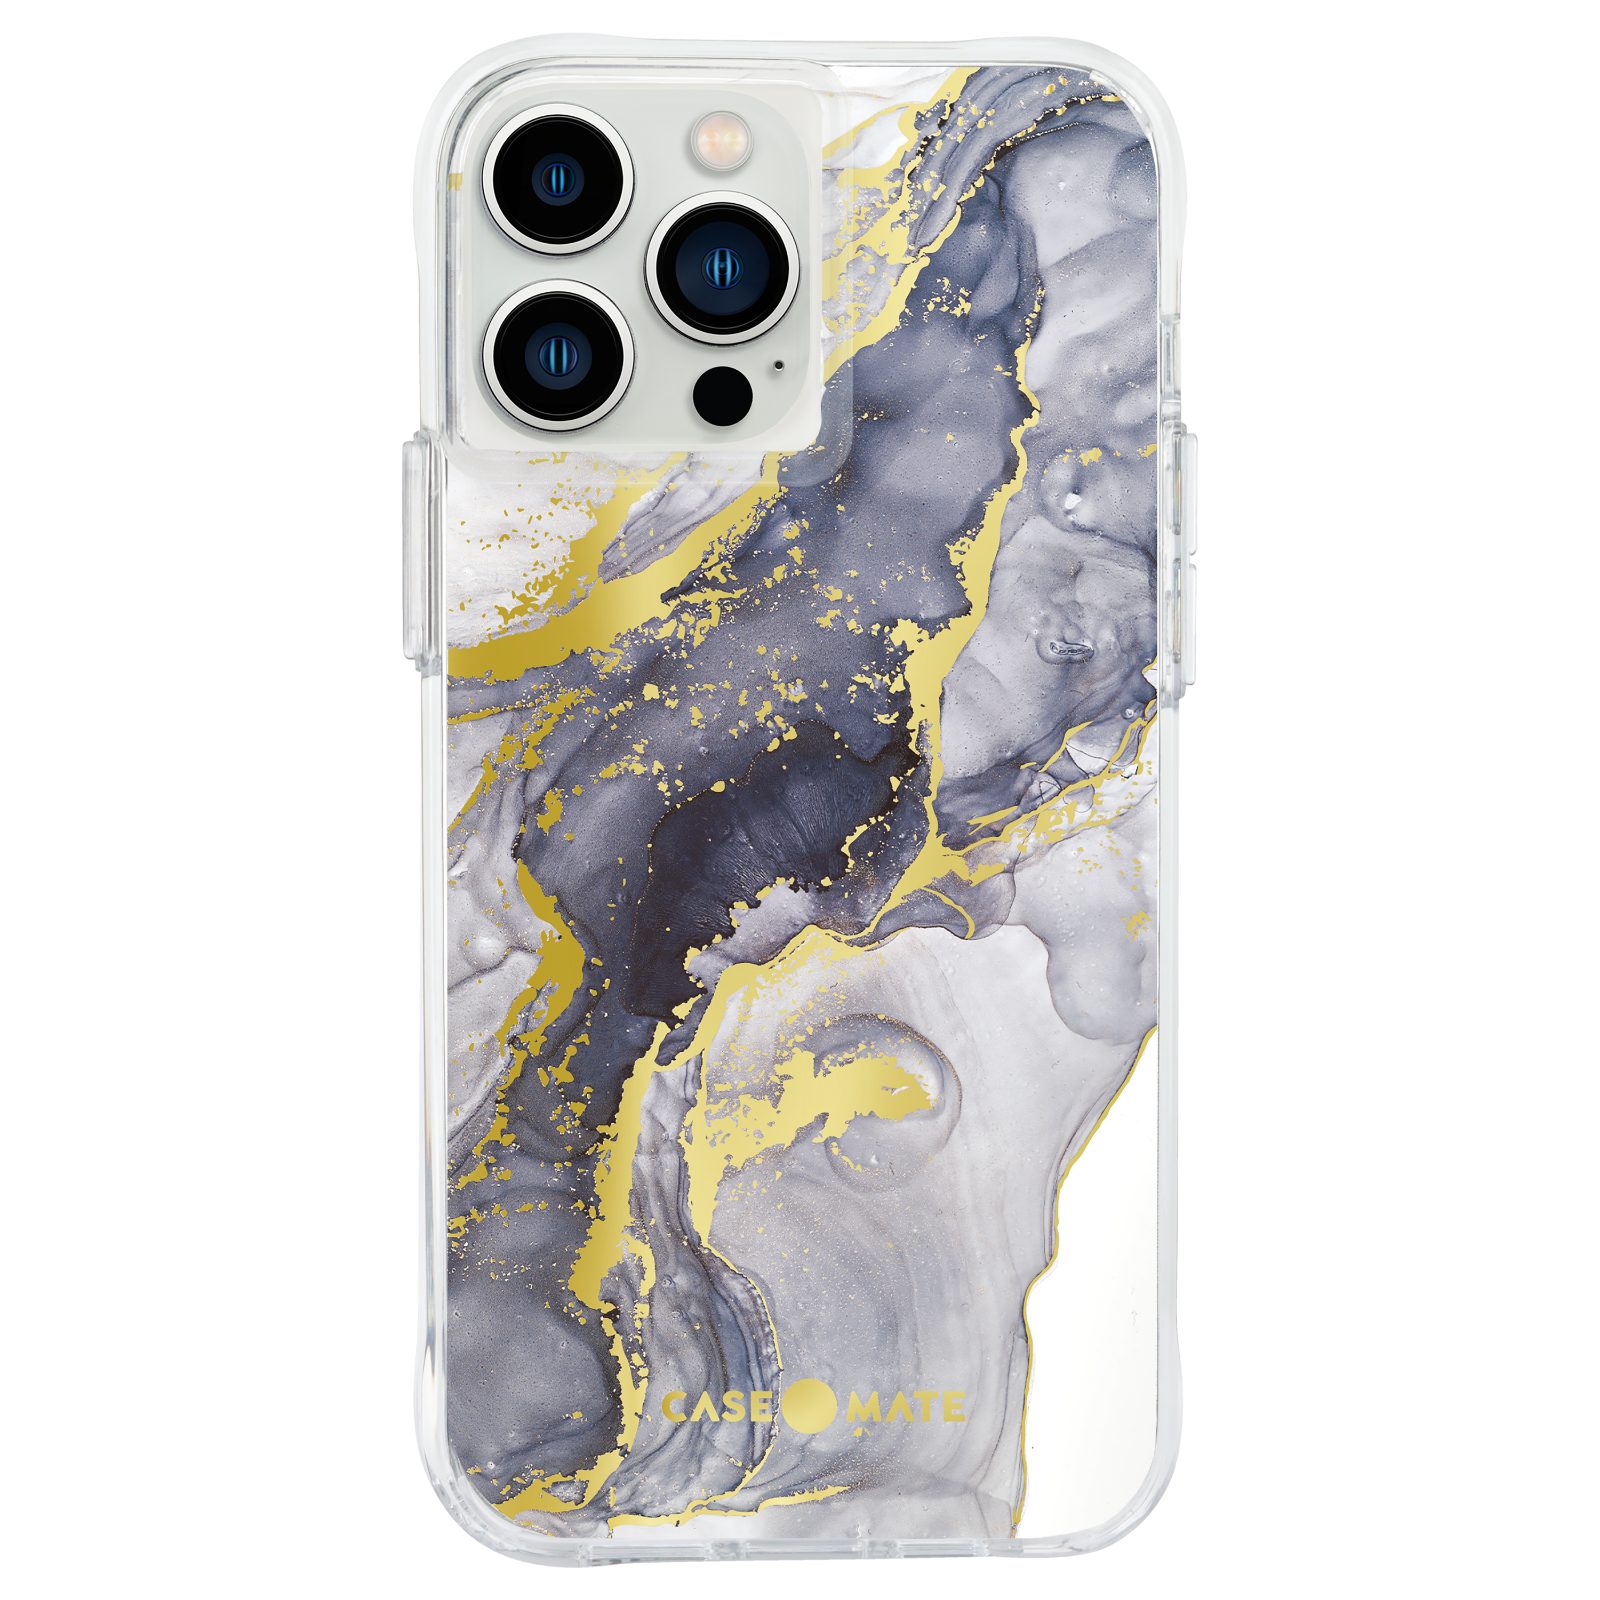 Case-Mate Handyhülle »Tough Print Case« Apple iPhone 13 Pro Max, iPhone 13  Pro Max Hülle Marmor, Kratzfeste Oberfläche, Fallschutz bis zu 3 m,  Dunkelblaues Marmor-Design mit Goldakzenten online kaufen | OTTO